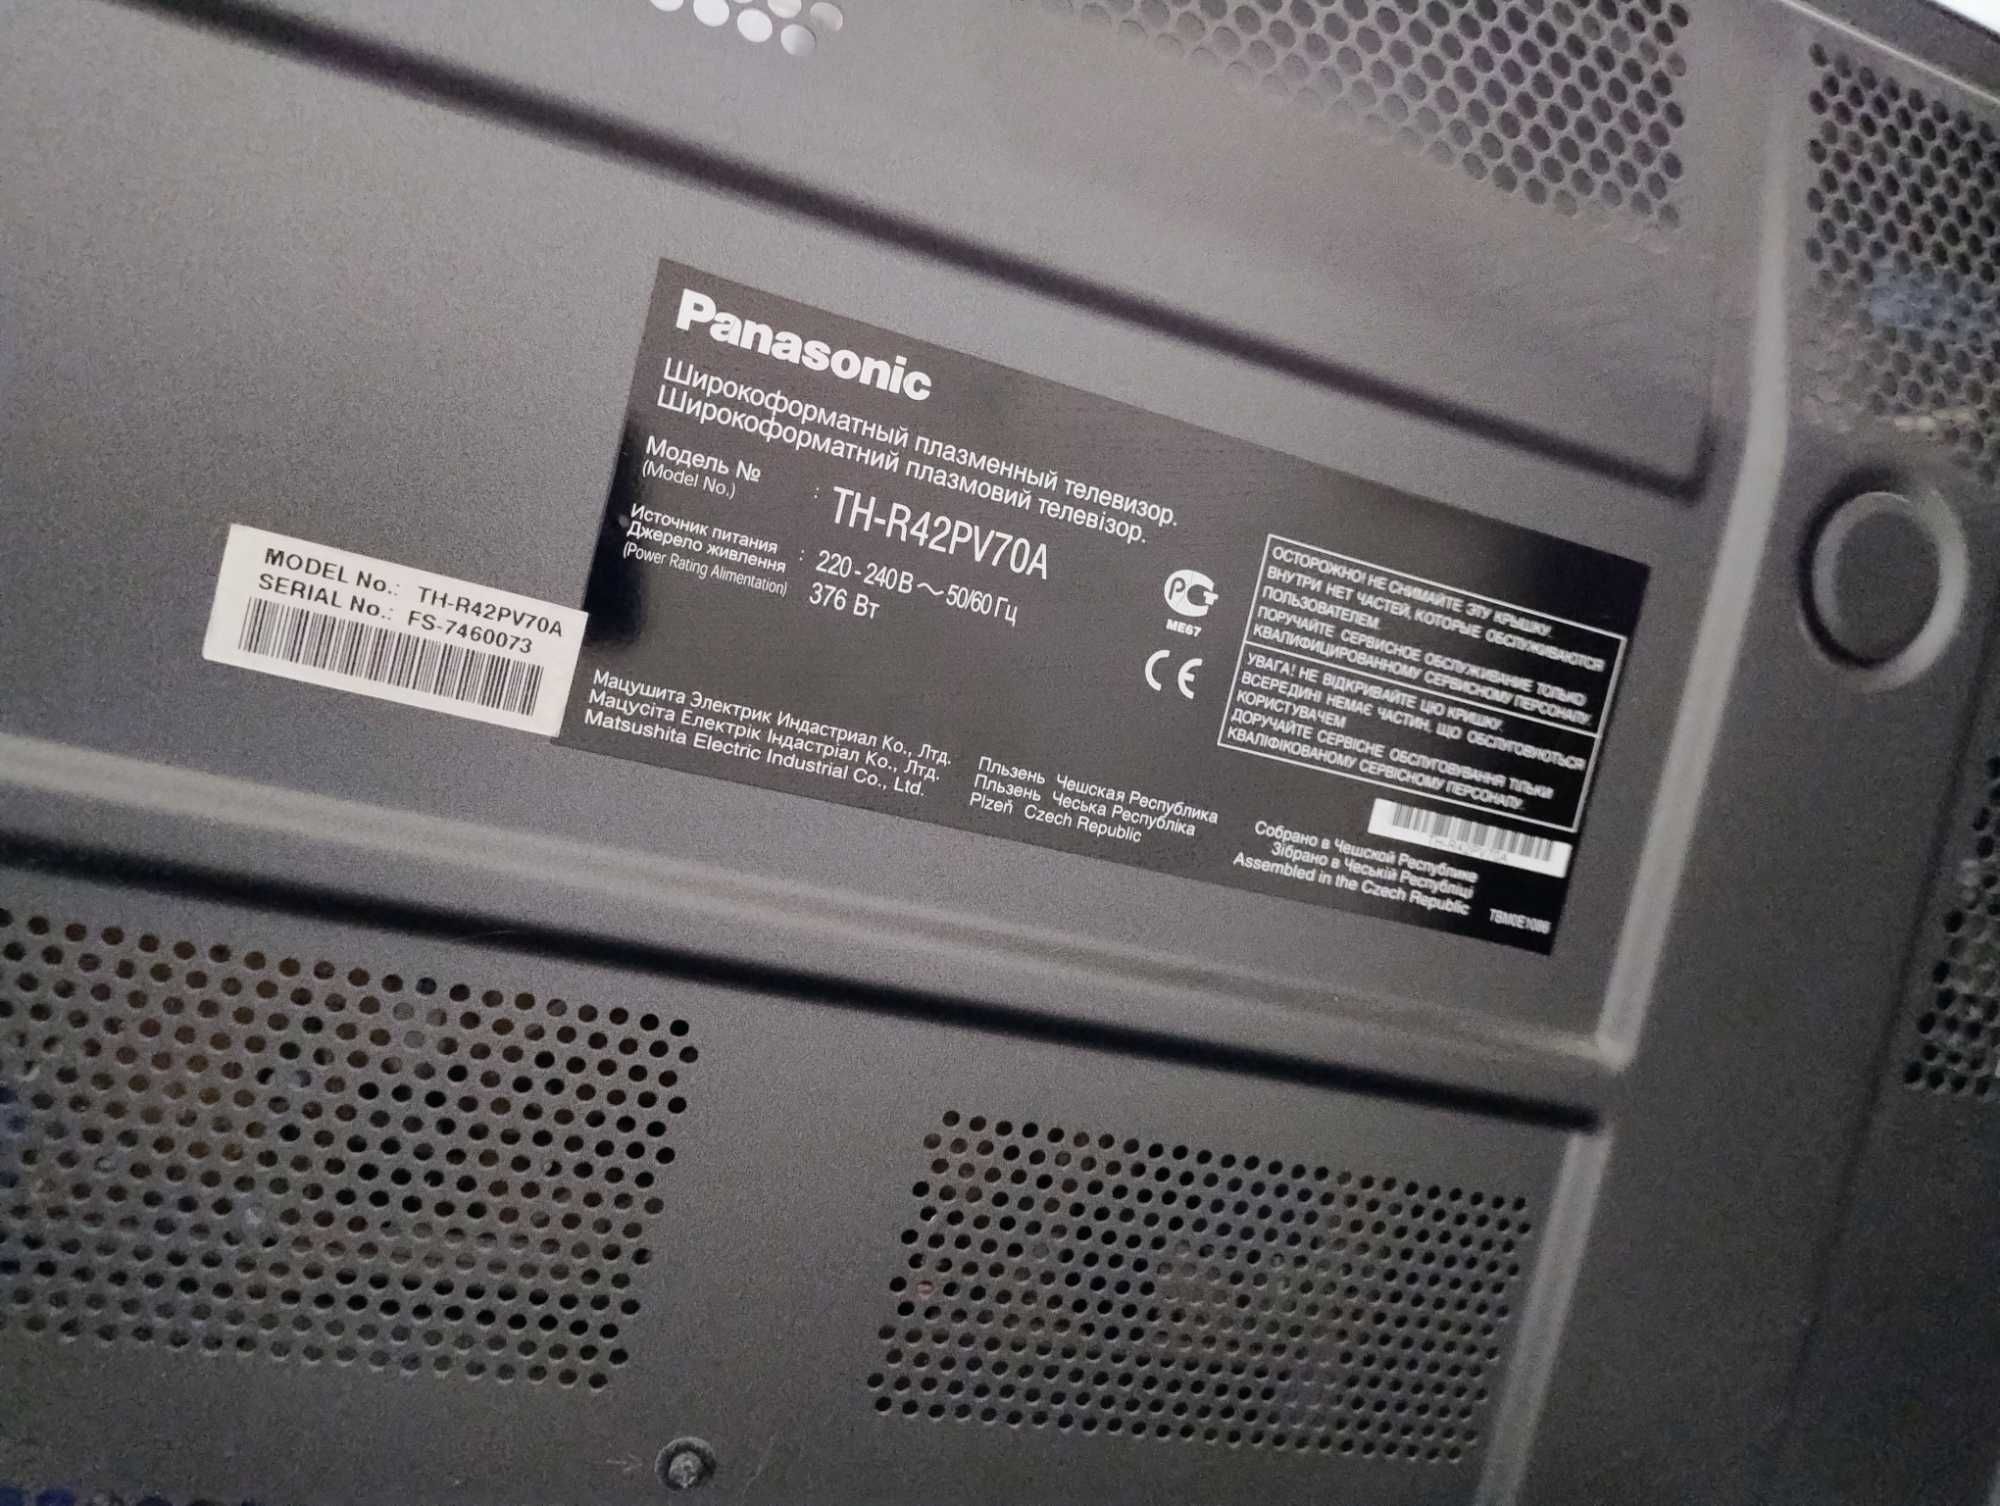 Плазмовий ТВ Panasonic TH-R42PV70